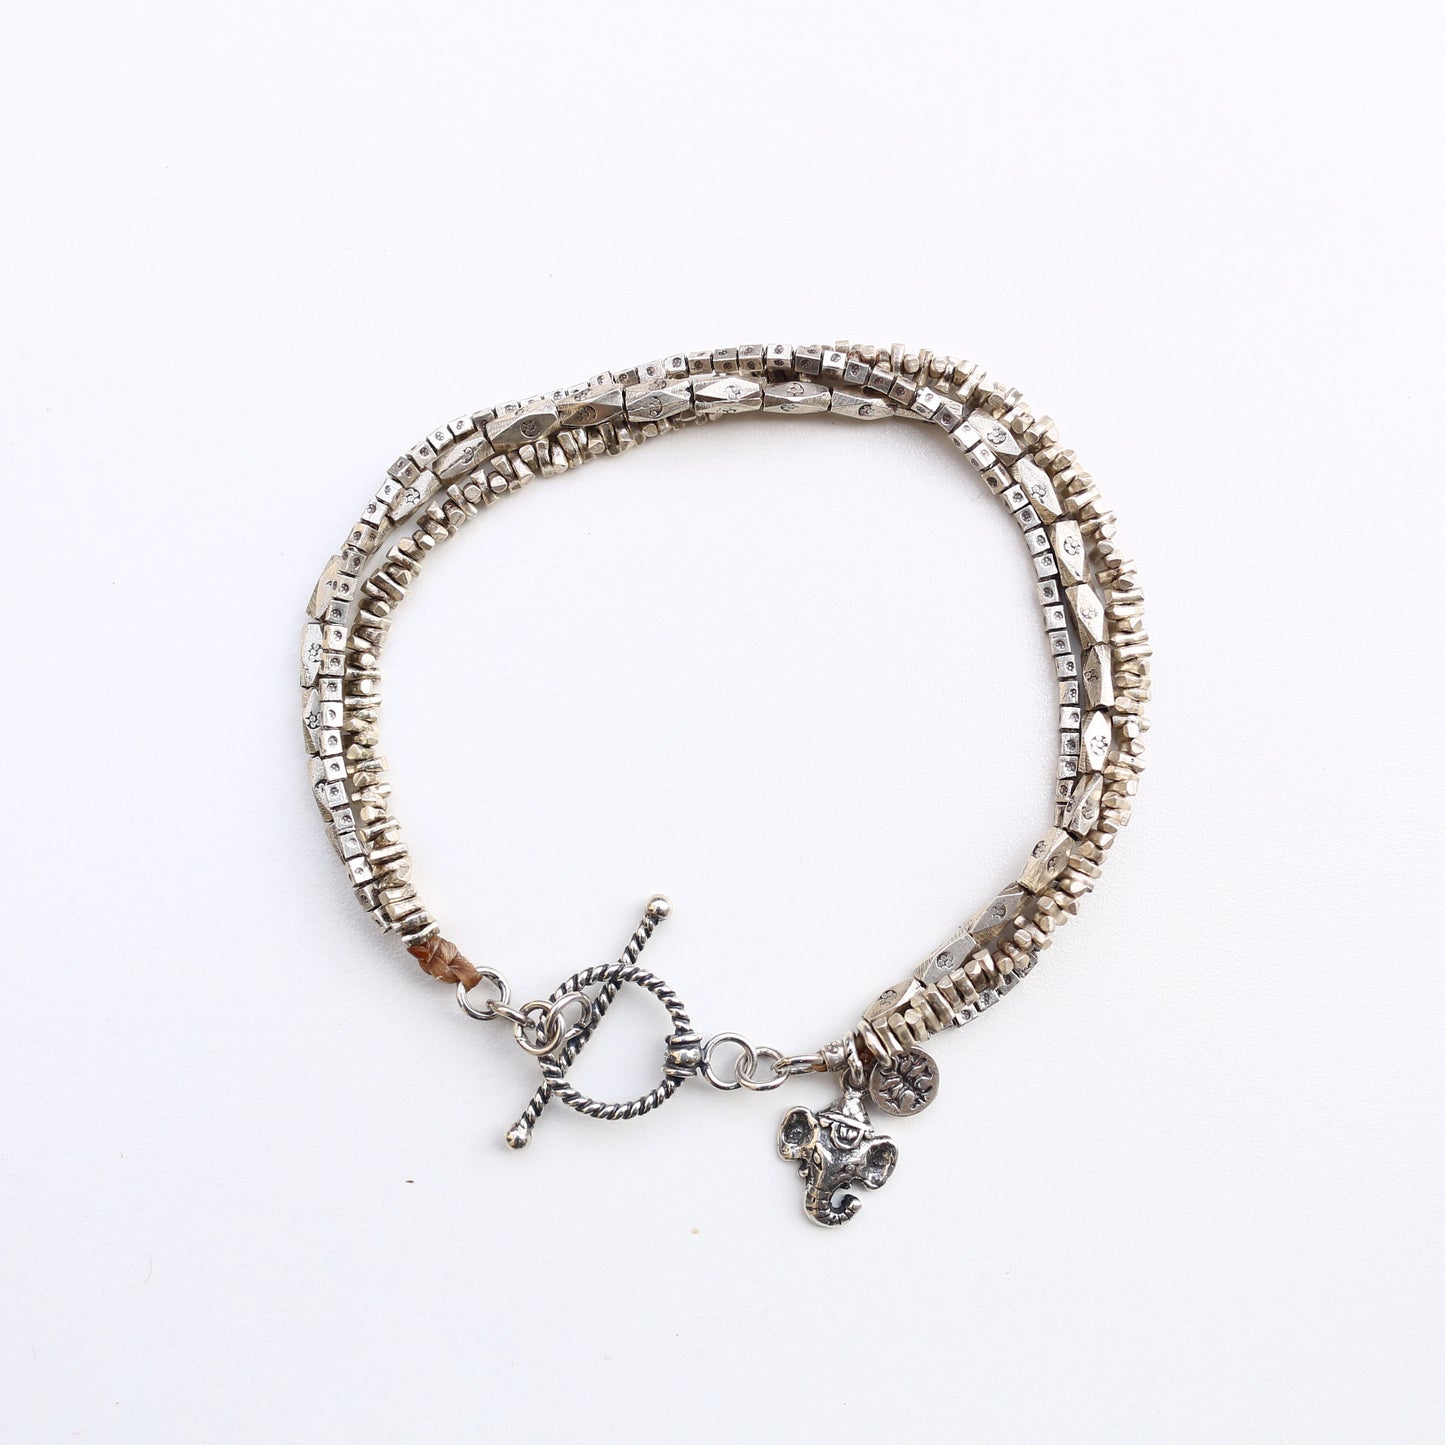 Stamped silver bracelet - Trendivine